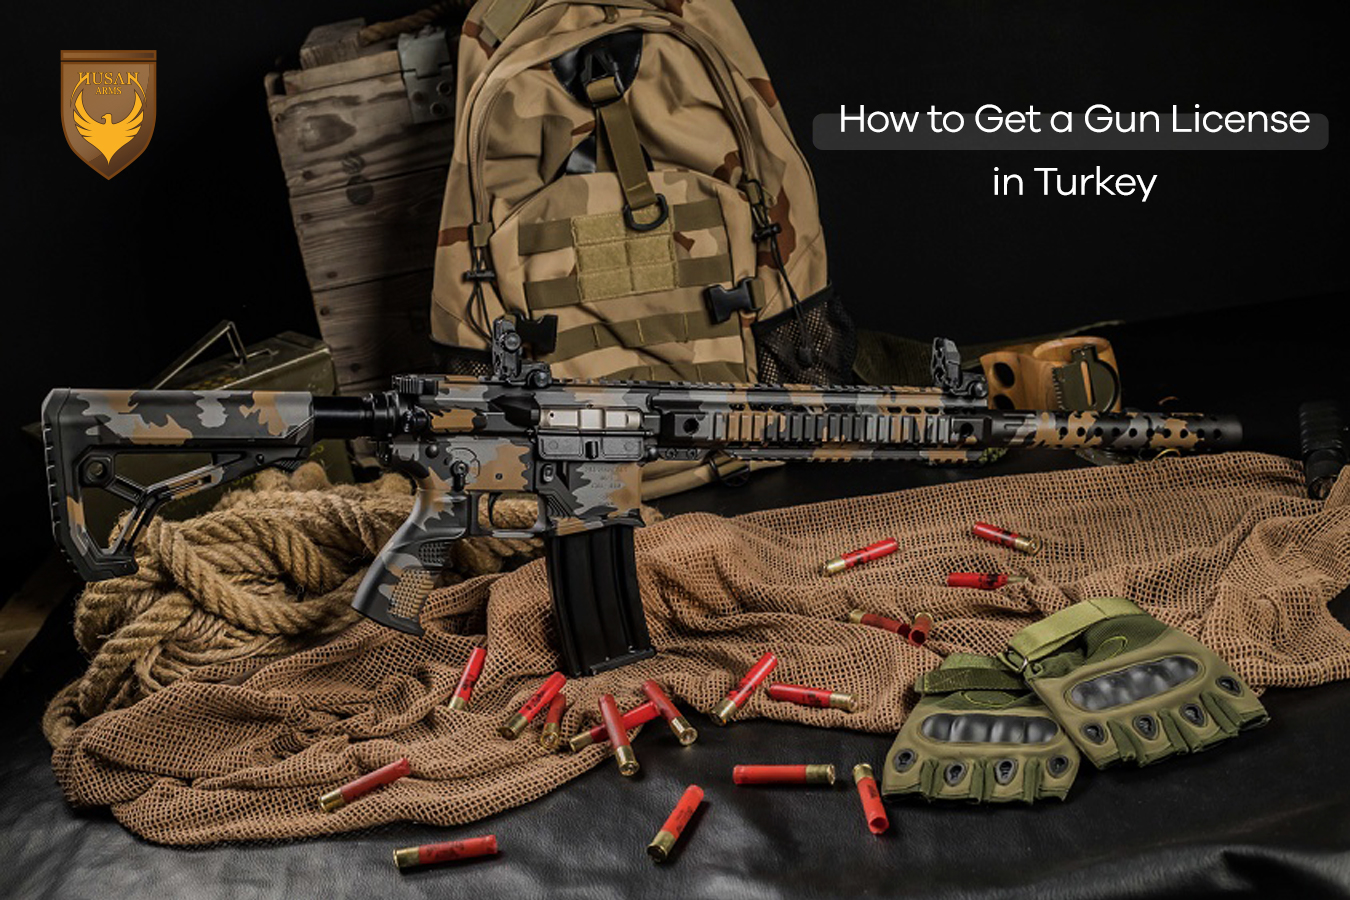 How to Get a Gun License in Turkey